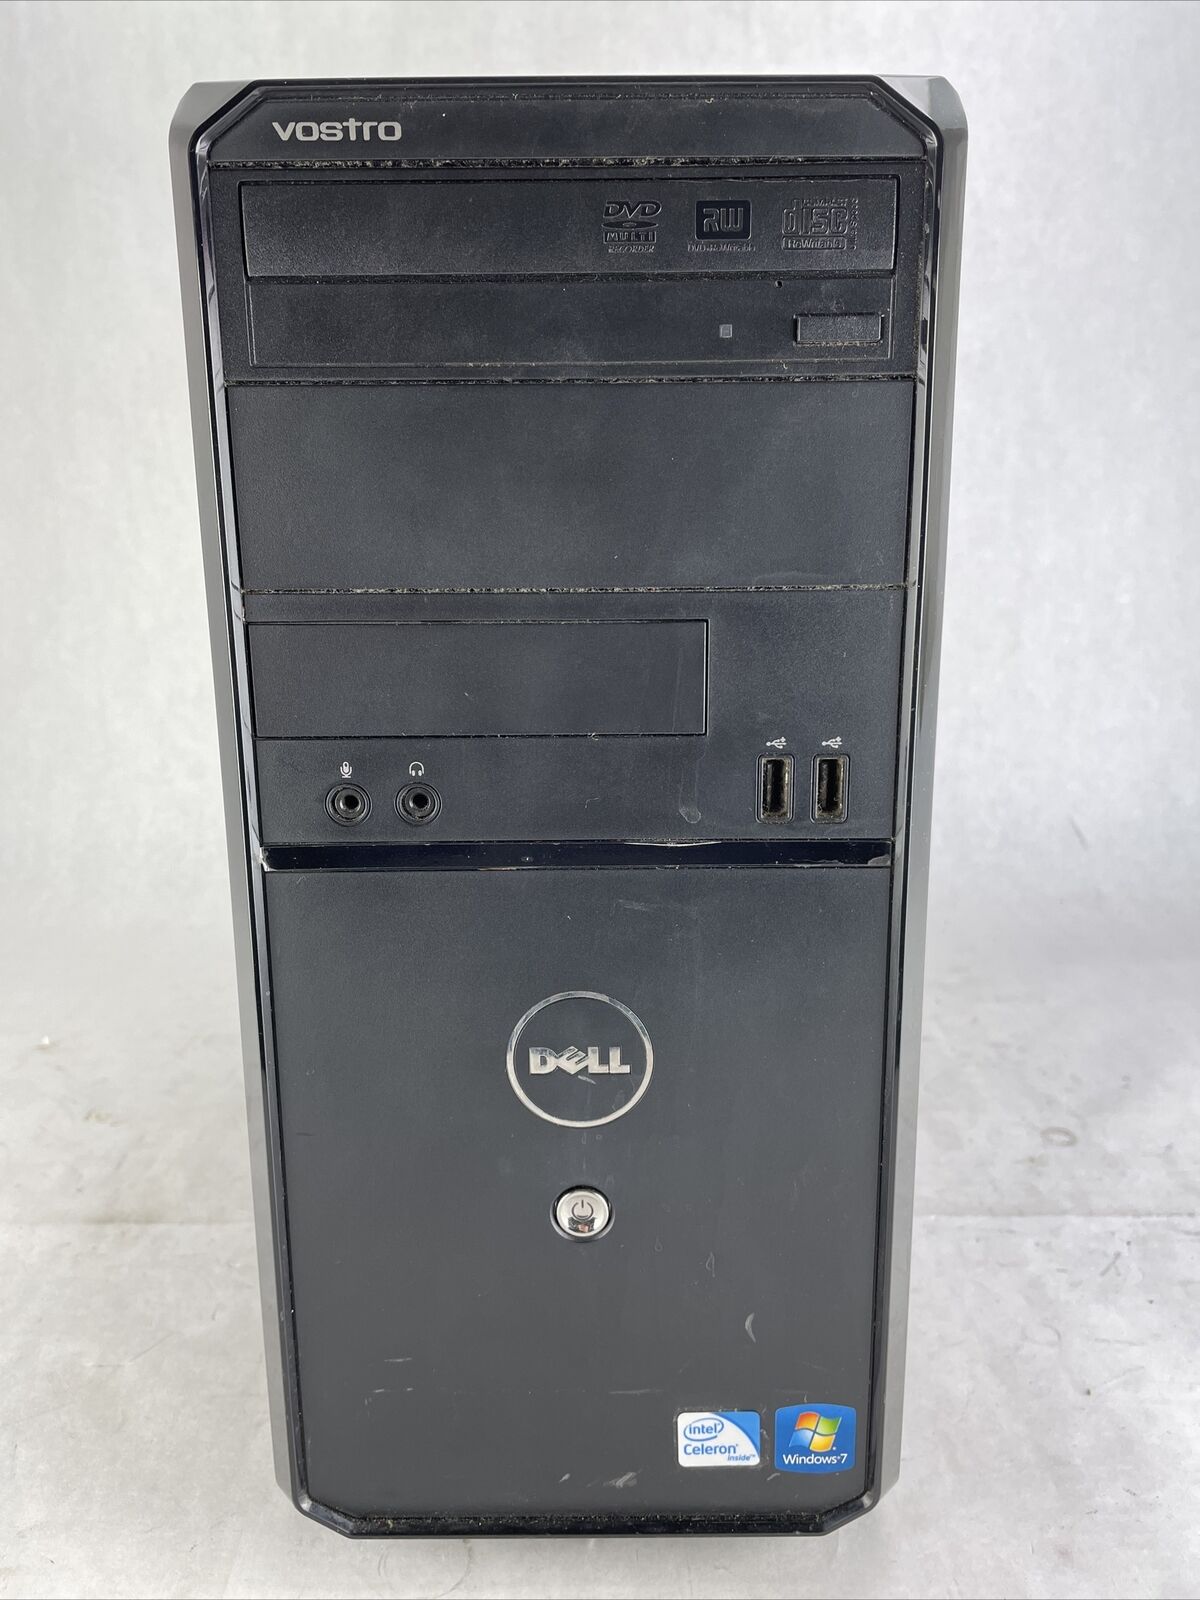 Dell Vostro 230 MT Intel Celeron 450 2.2GHz 4GB RAM No HDD No OS